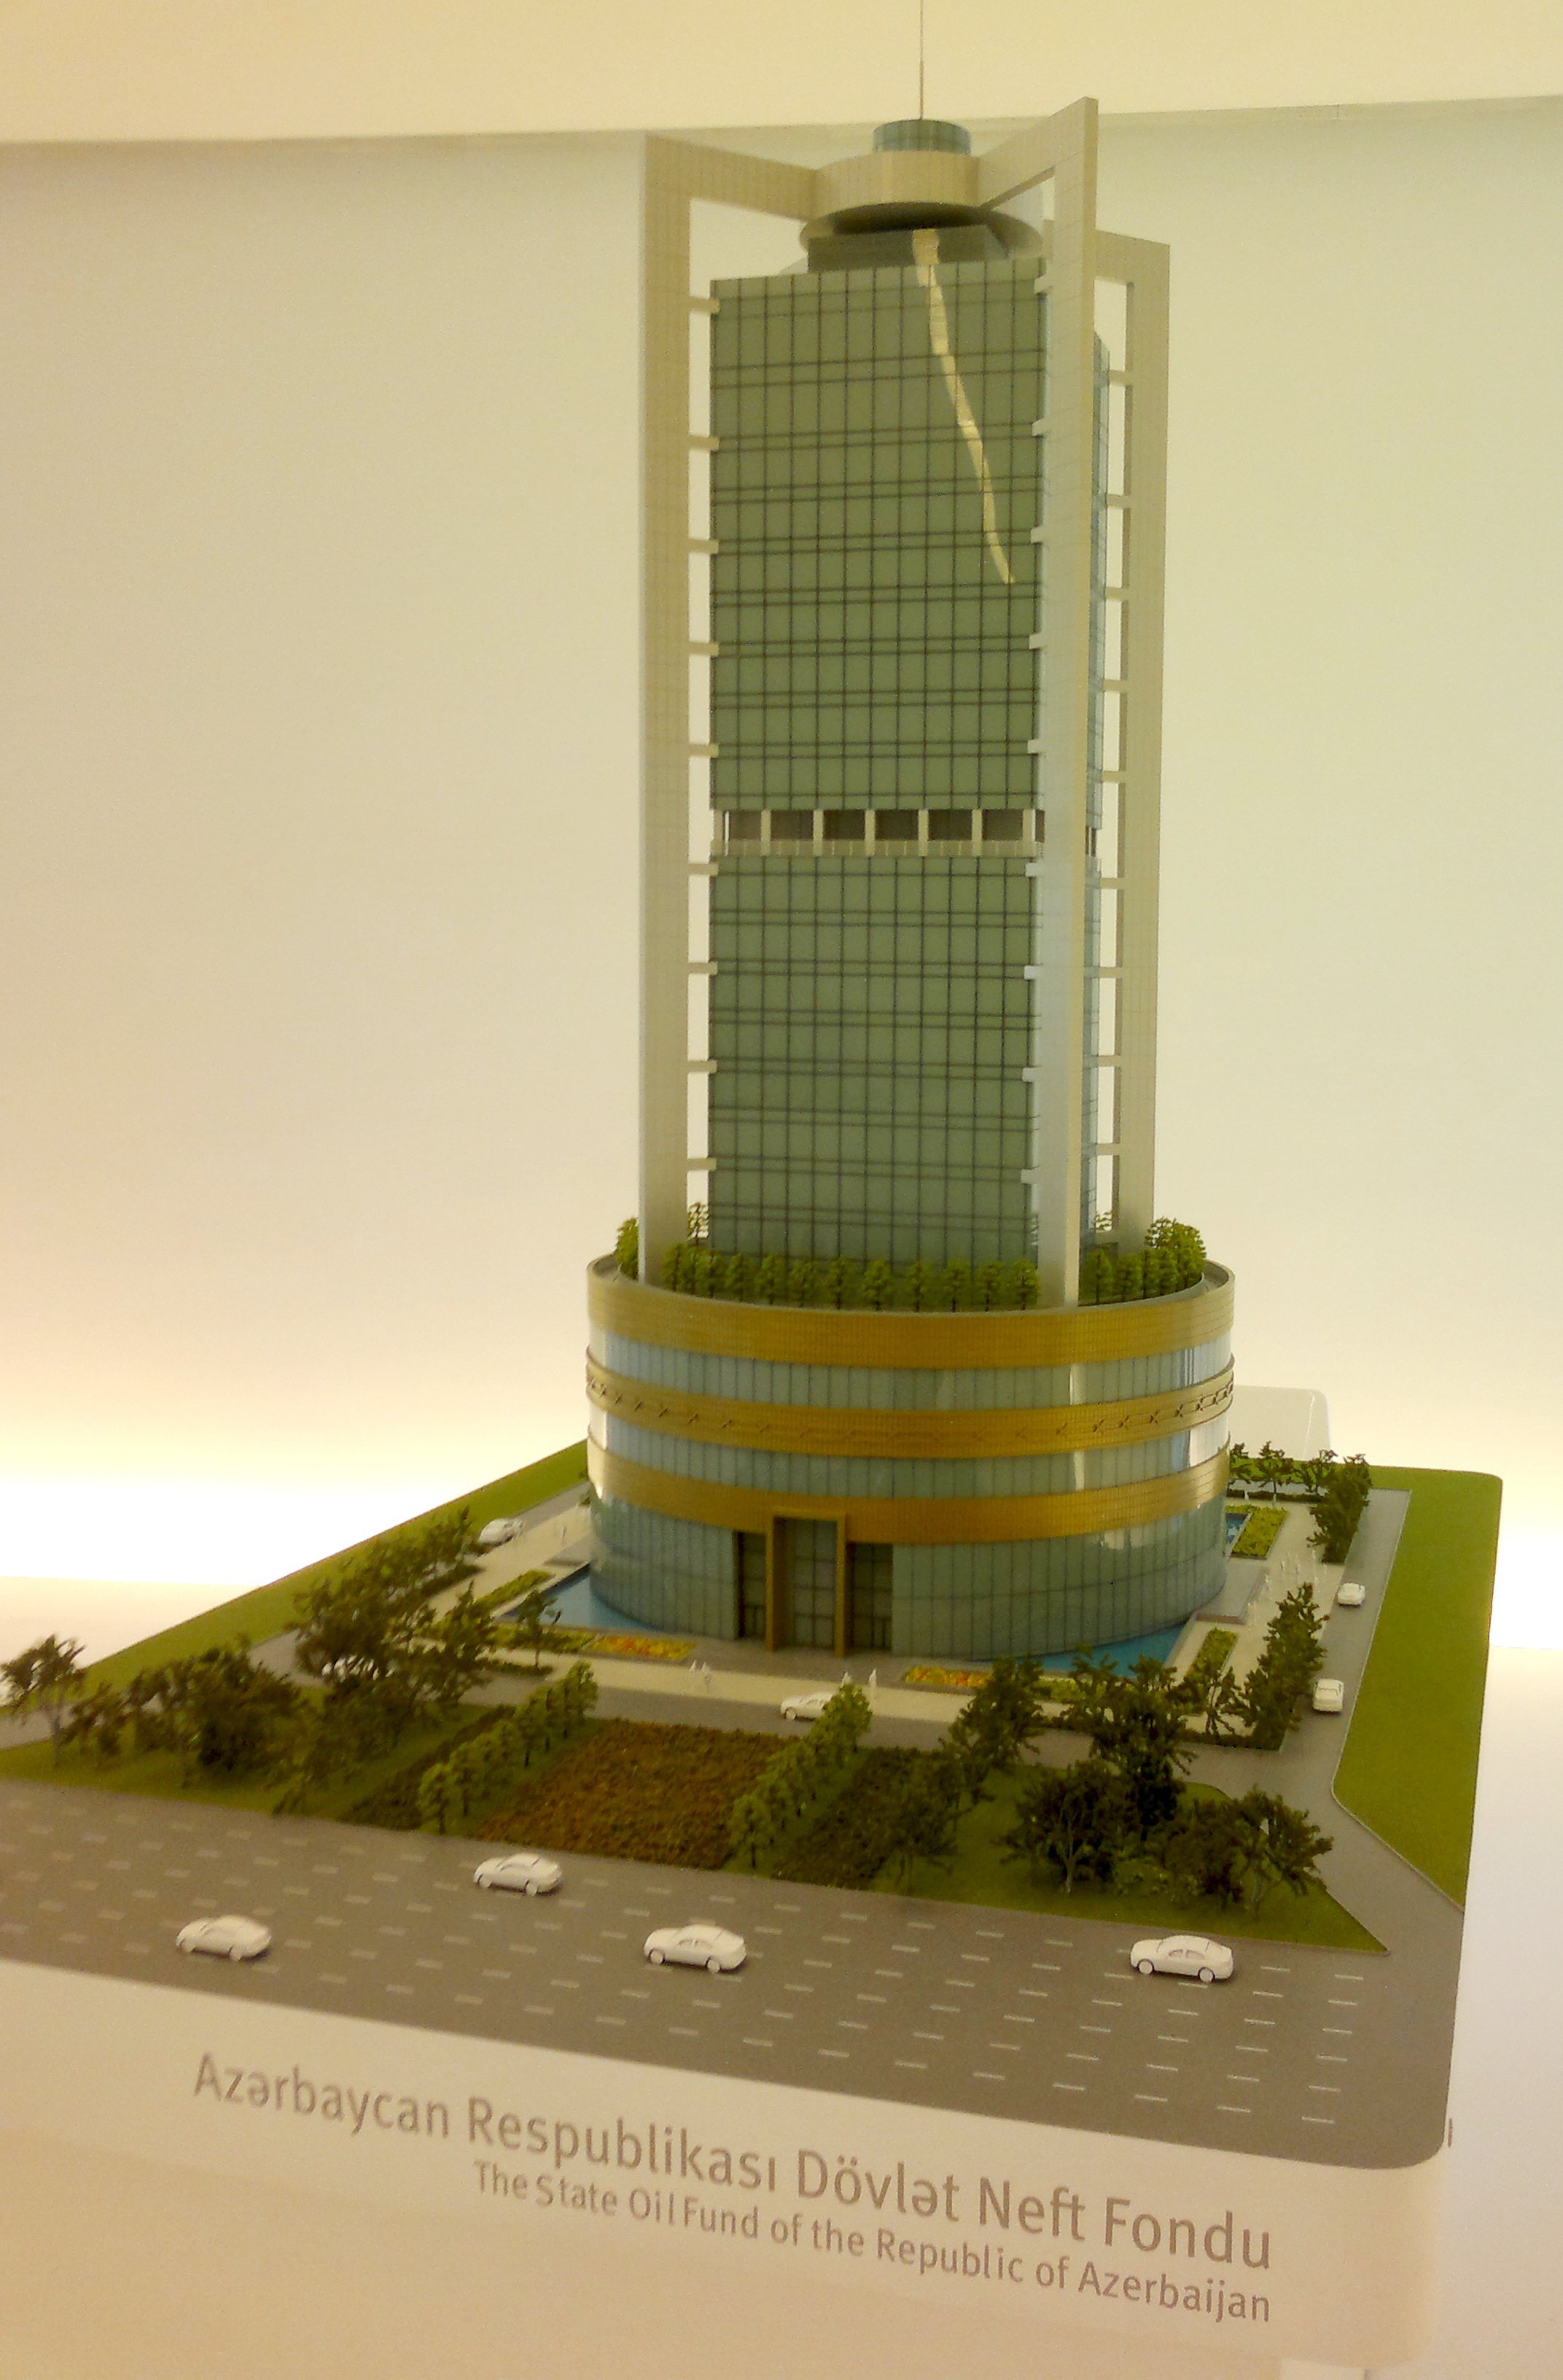 Макет здания Нефтяного фонда Азербайджанской Республики.jpg